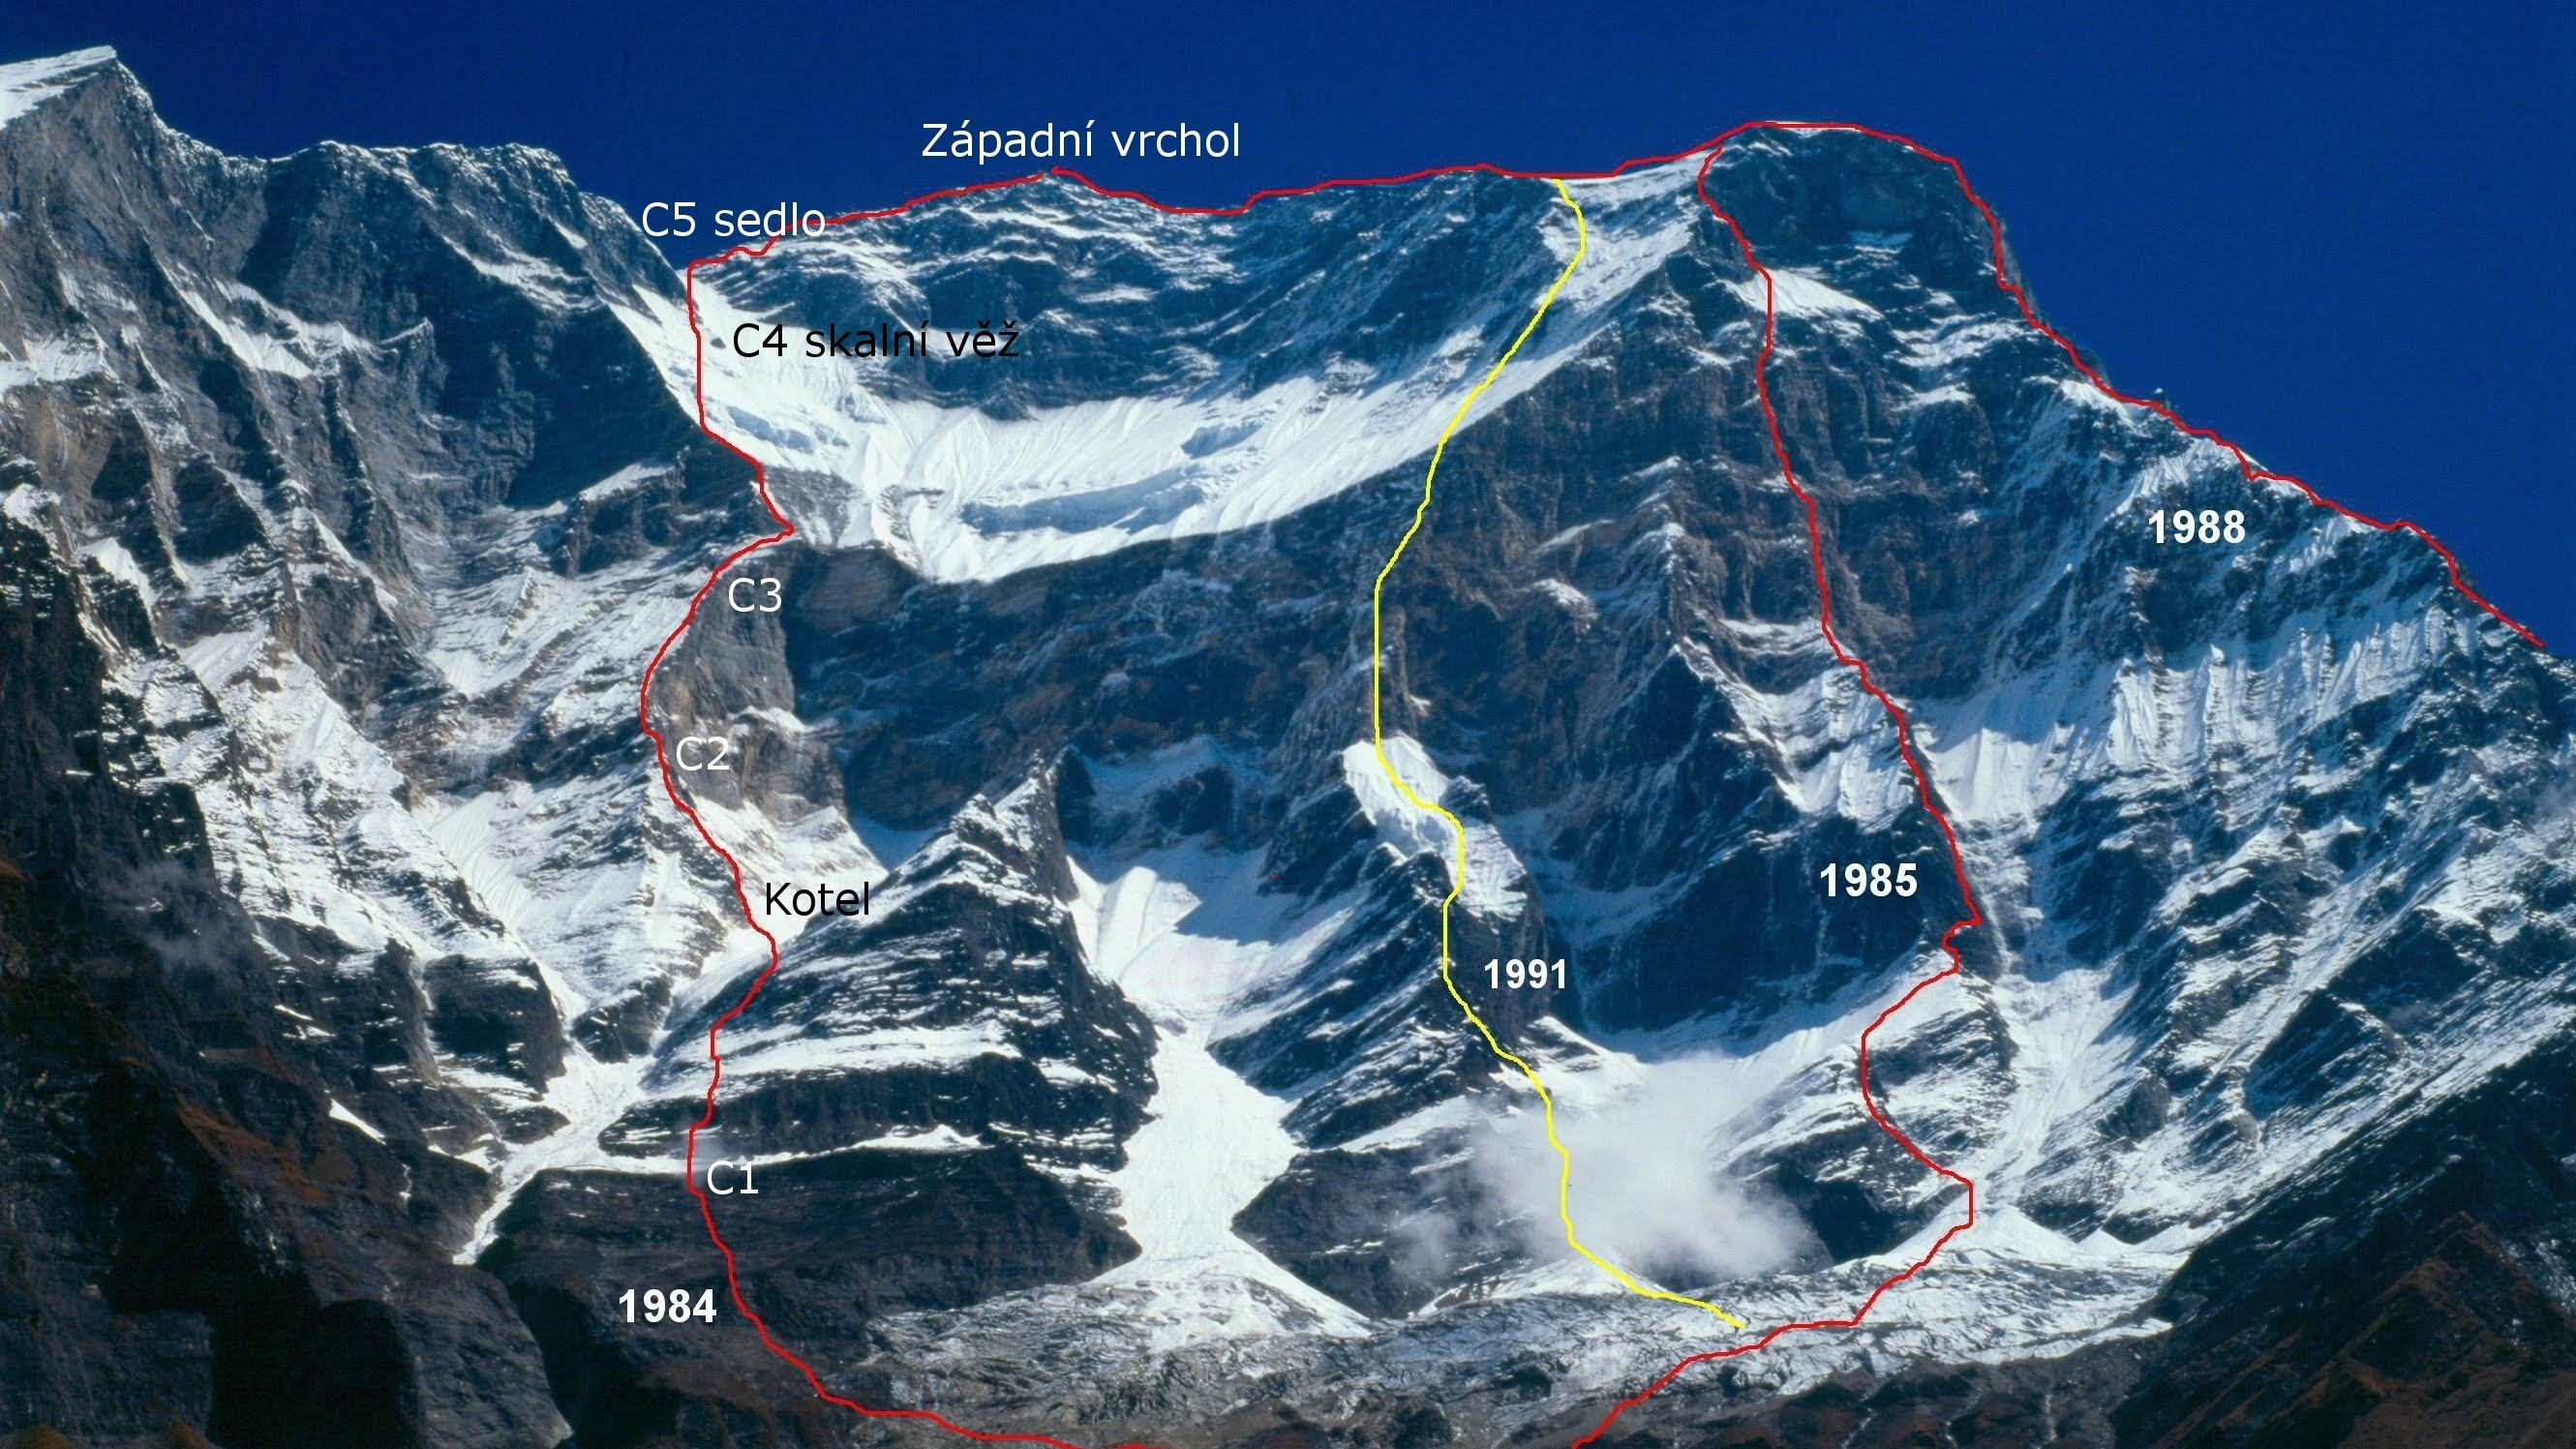 Юго-Западный контрфорс восьмитысячника Дхаулагири (Dhaulagiri, 8167 м) 1988 года - линия красного цвета, крайняя справа.